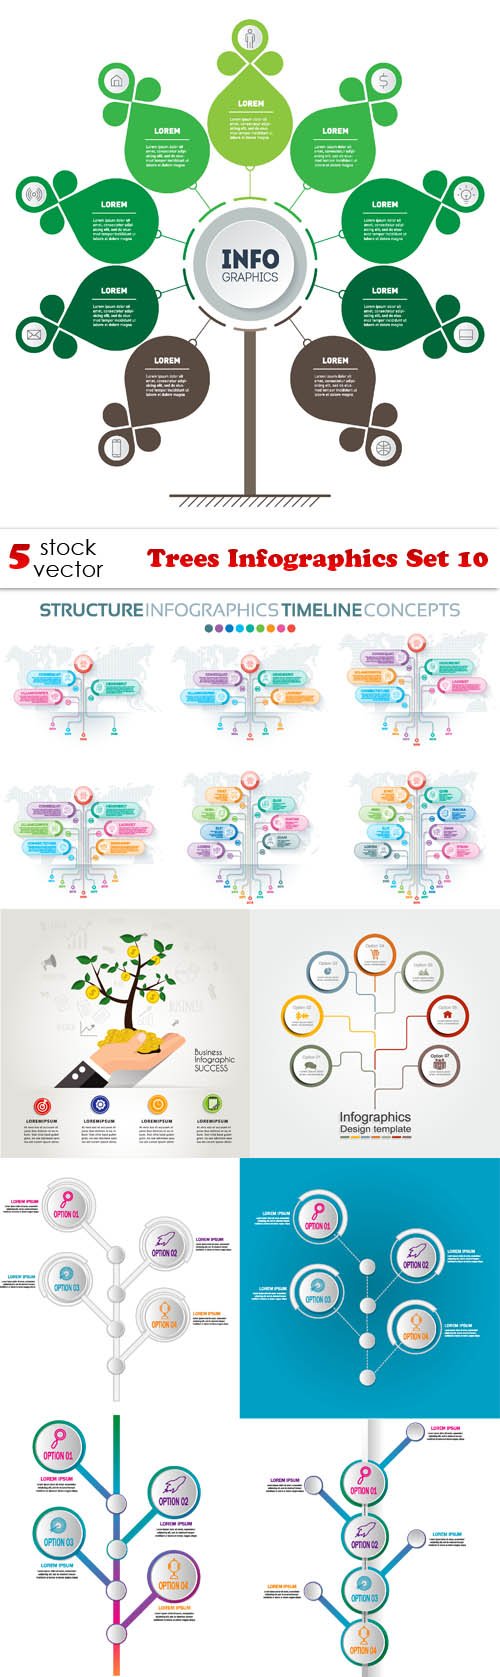 Vectors - Trees Infographics Set 10